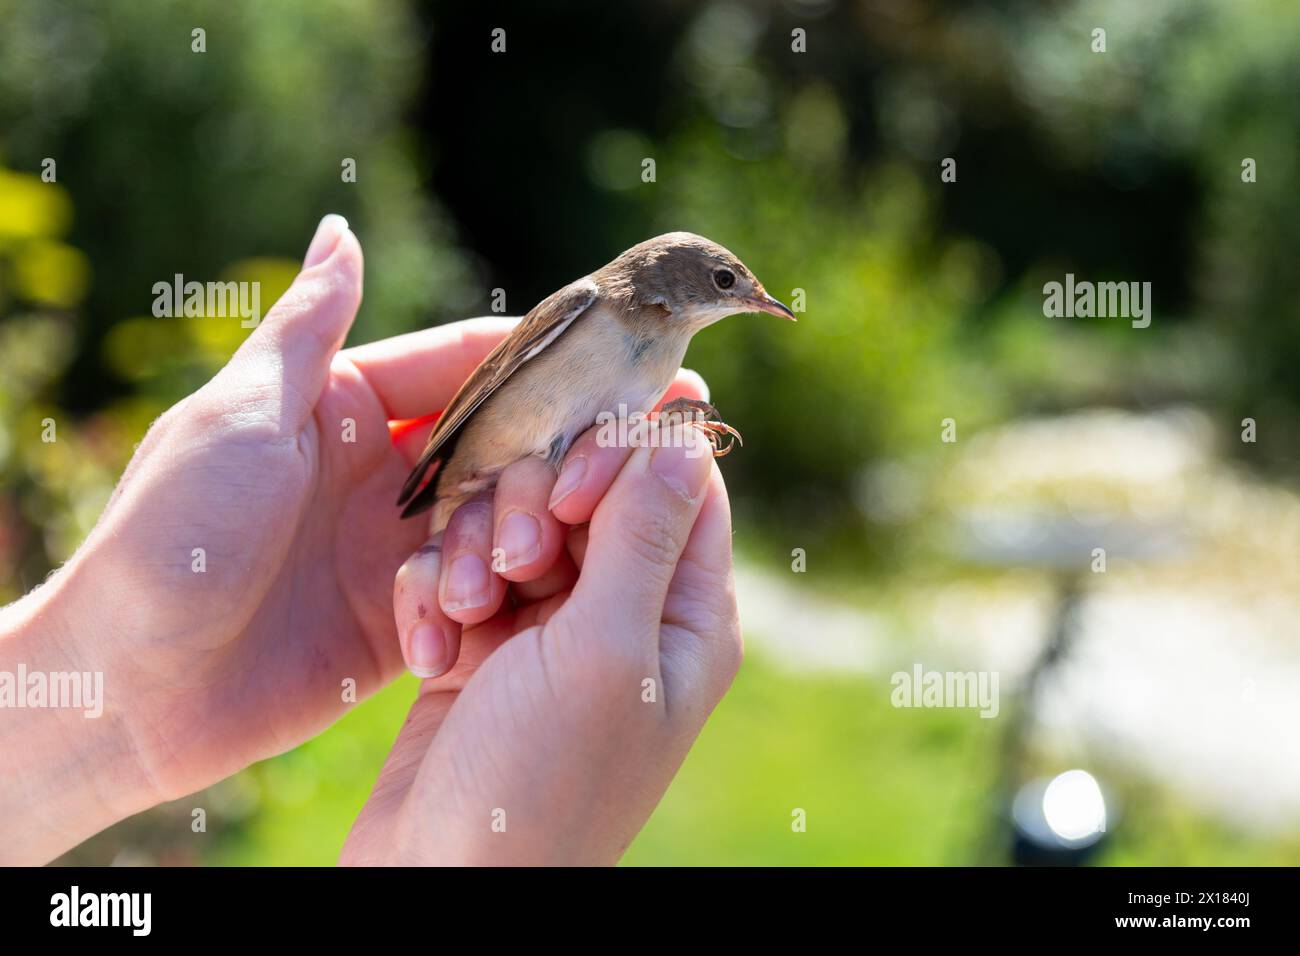 Small British bird in a bird ringer's hand, UK Stock Photo